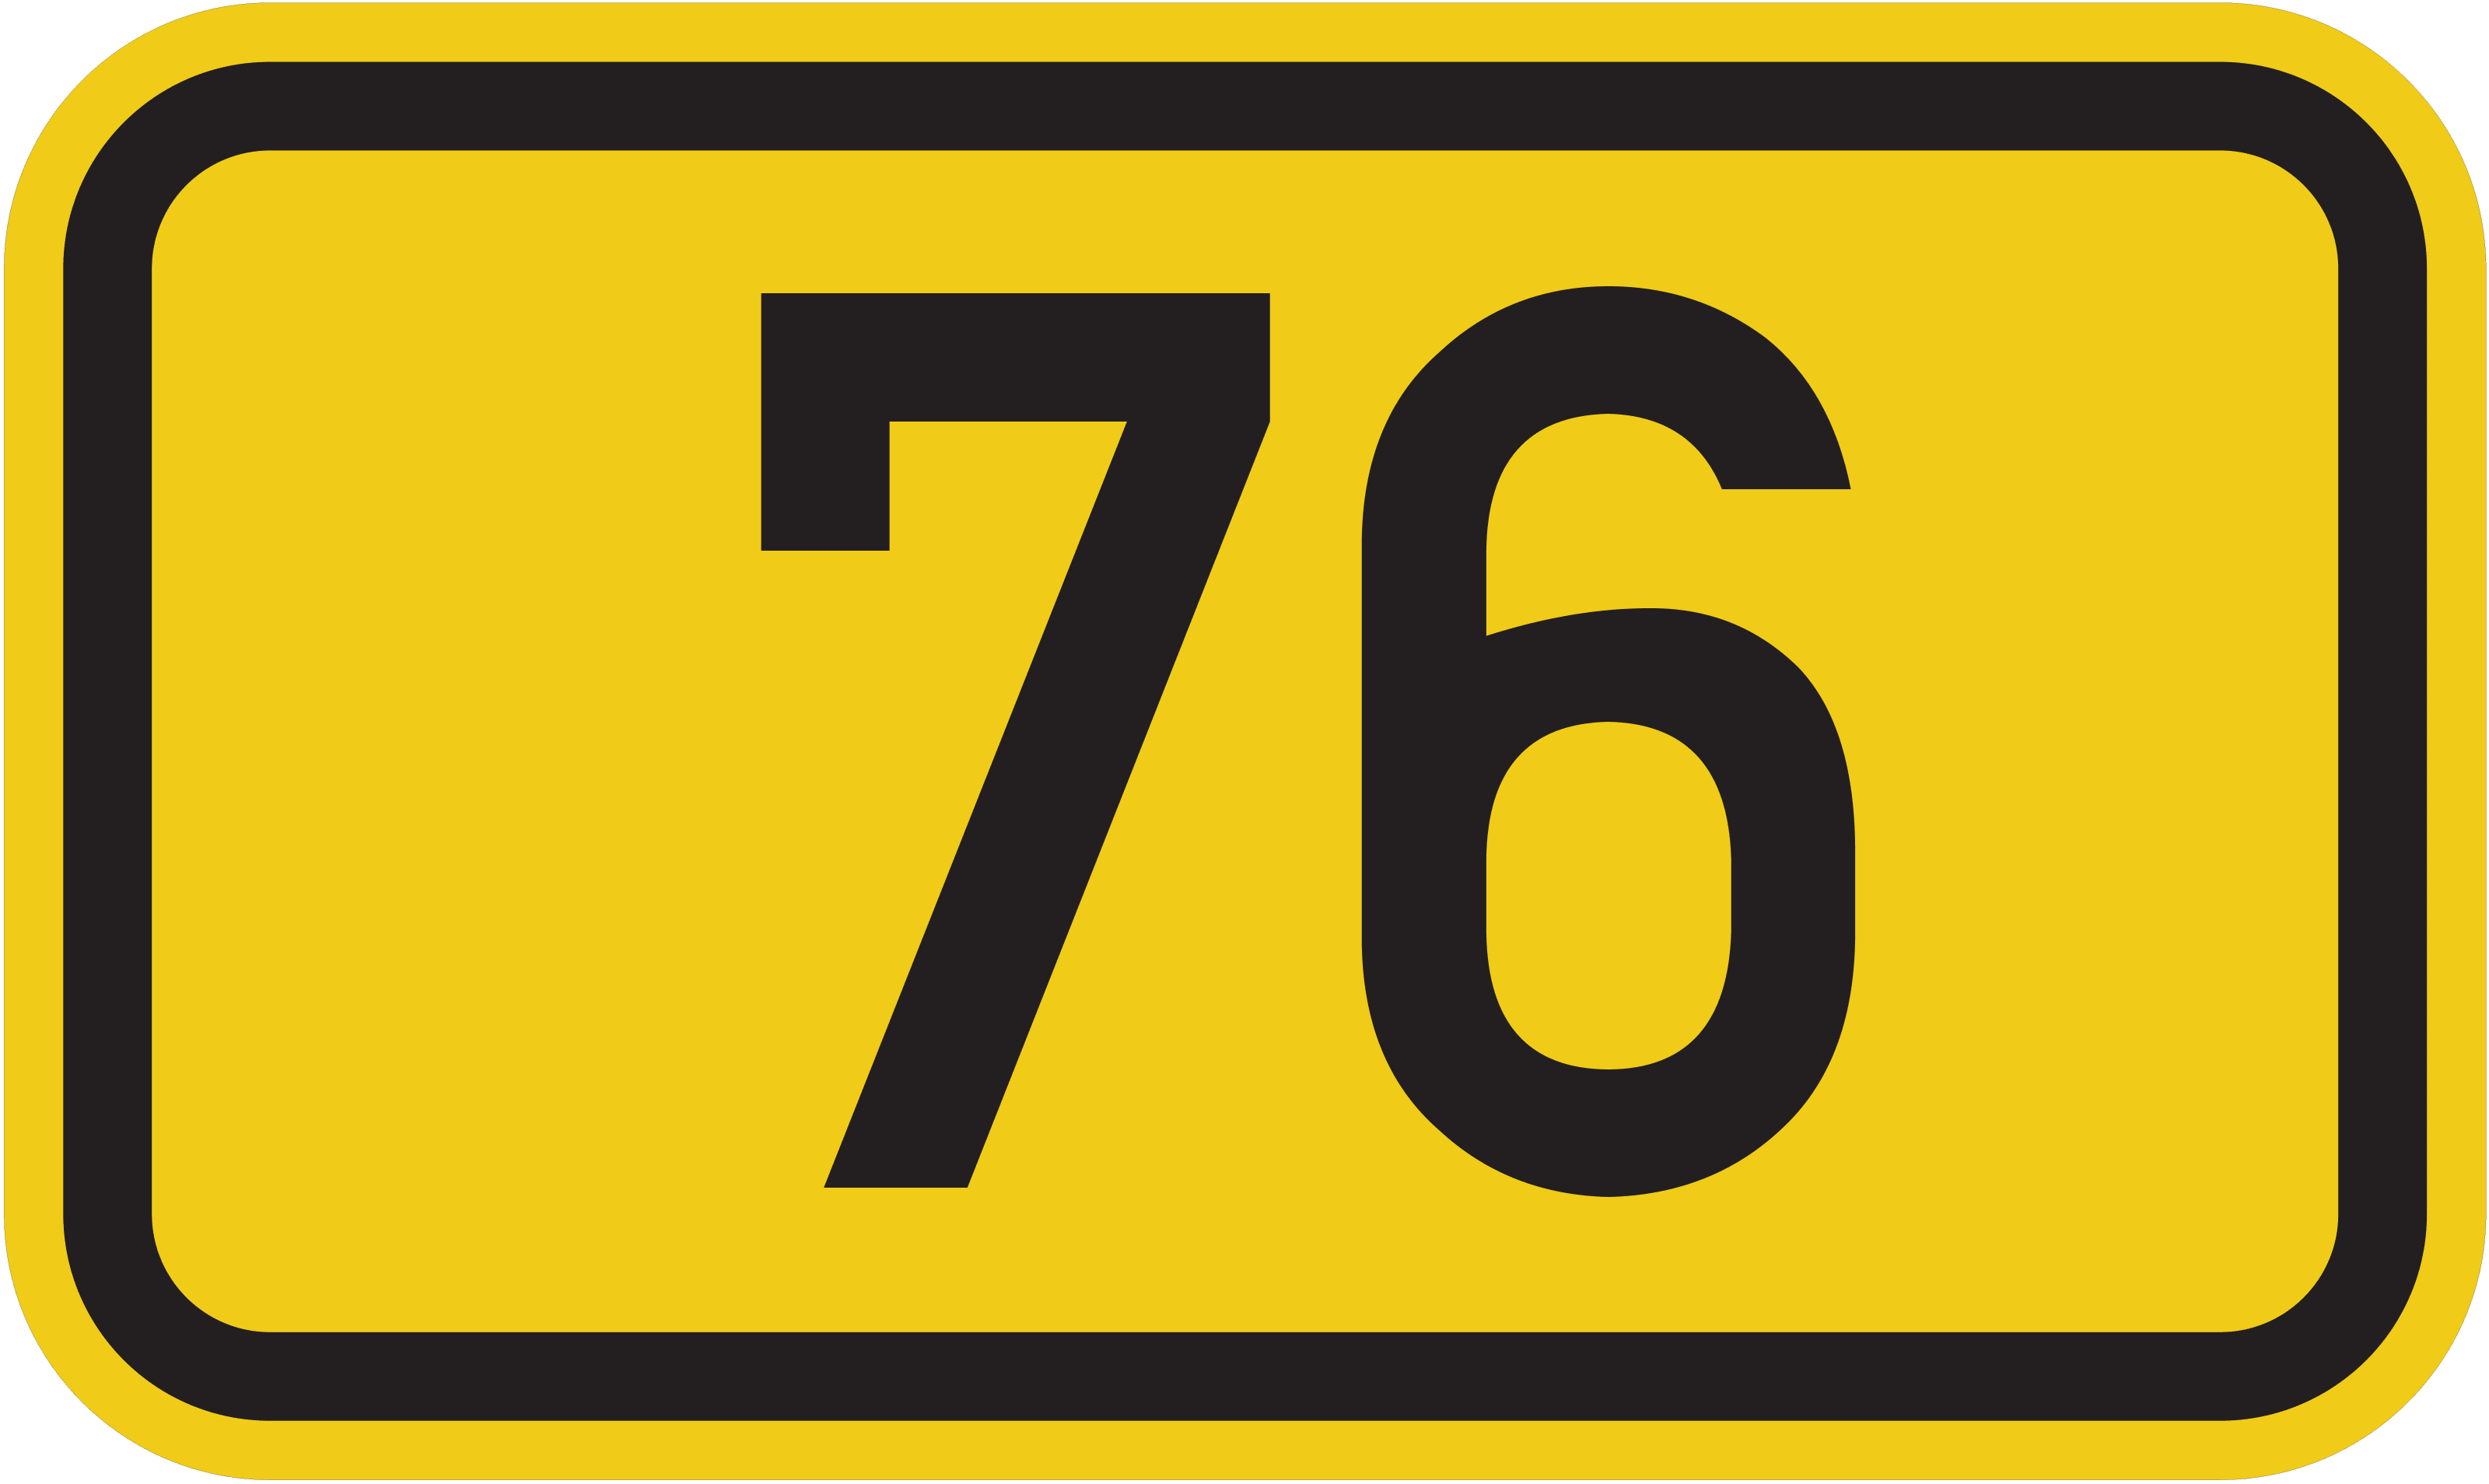 Bundesstraße B 76